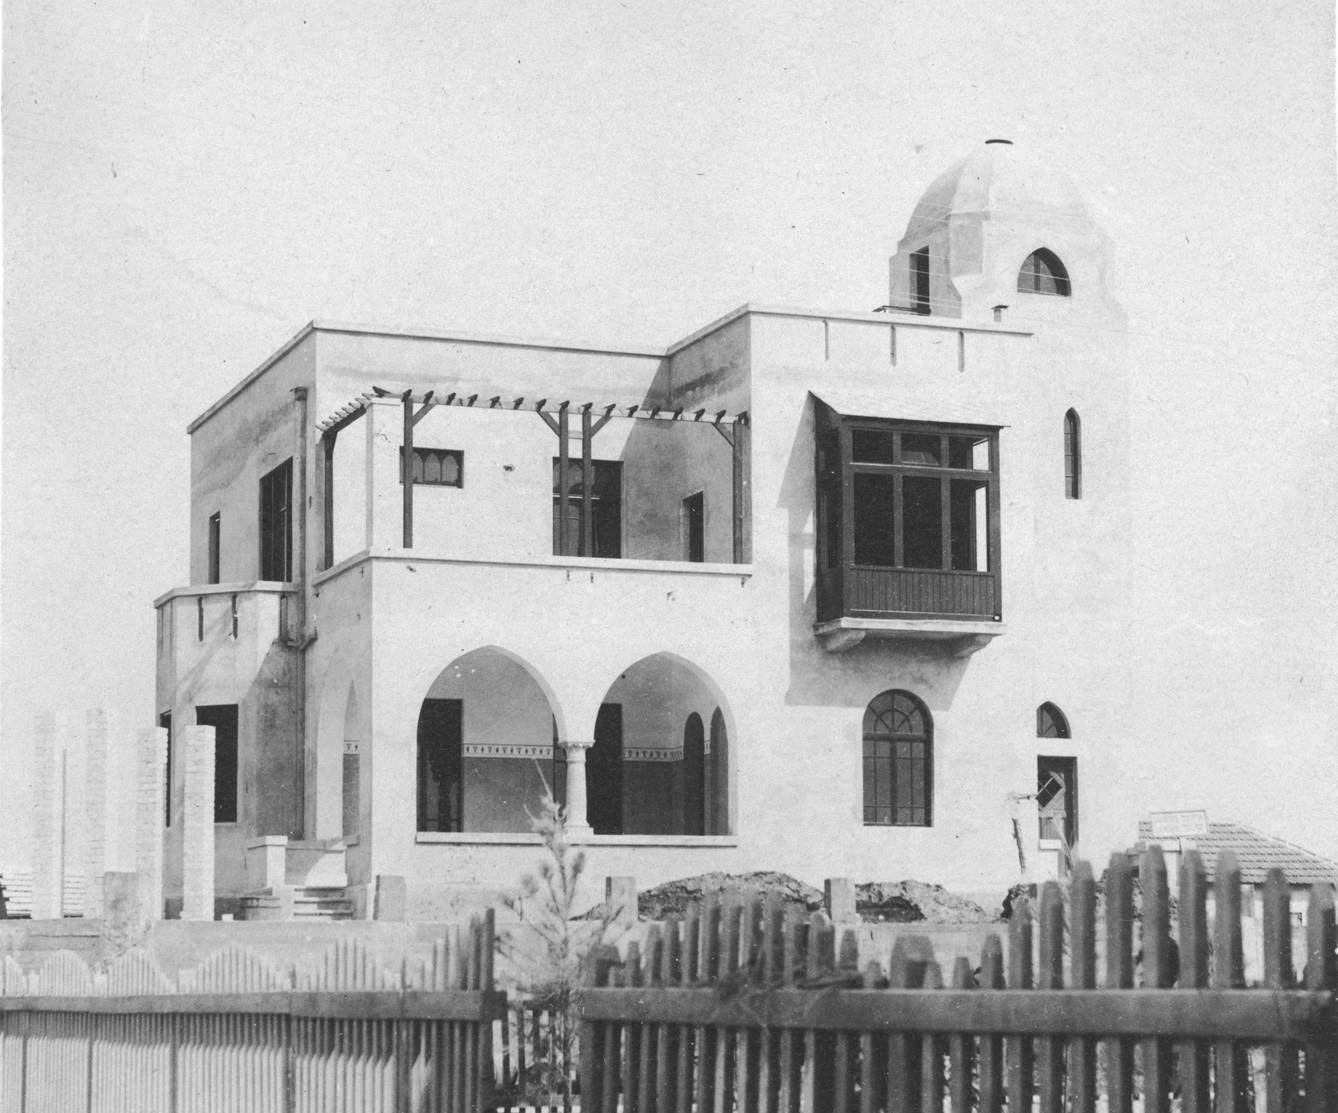 צילום חזיתי של בית ביאליק בעת שלהי בנייתו באמצע שנות ה20 של המאה ה20